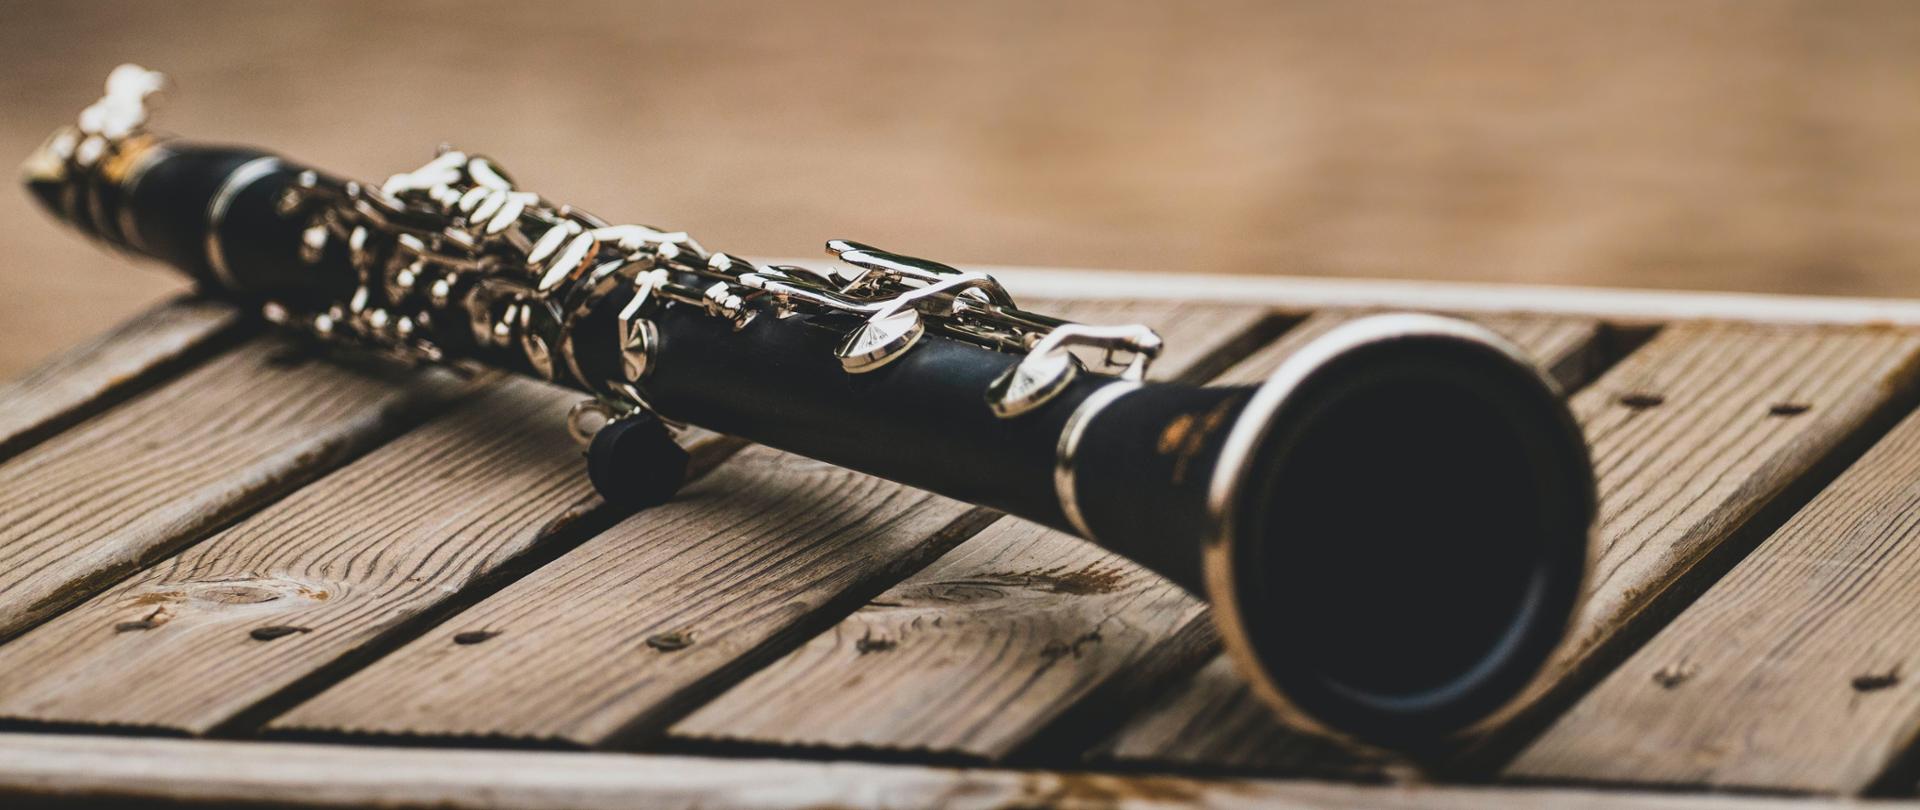 Fotografia przedstawia klarnet leżący na jasnych deseczkach